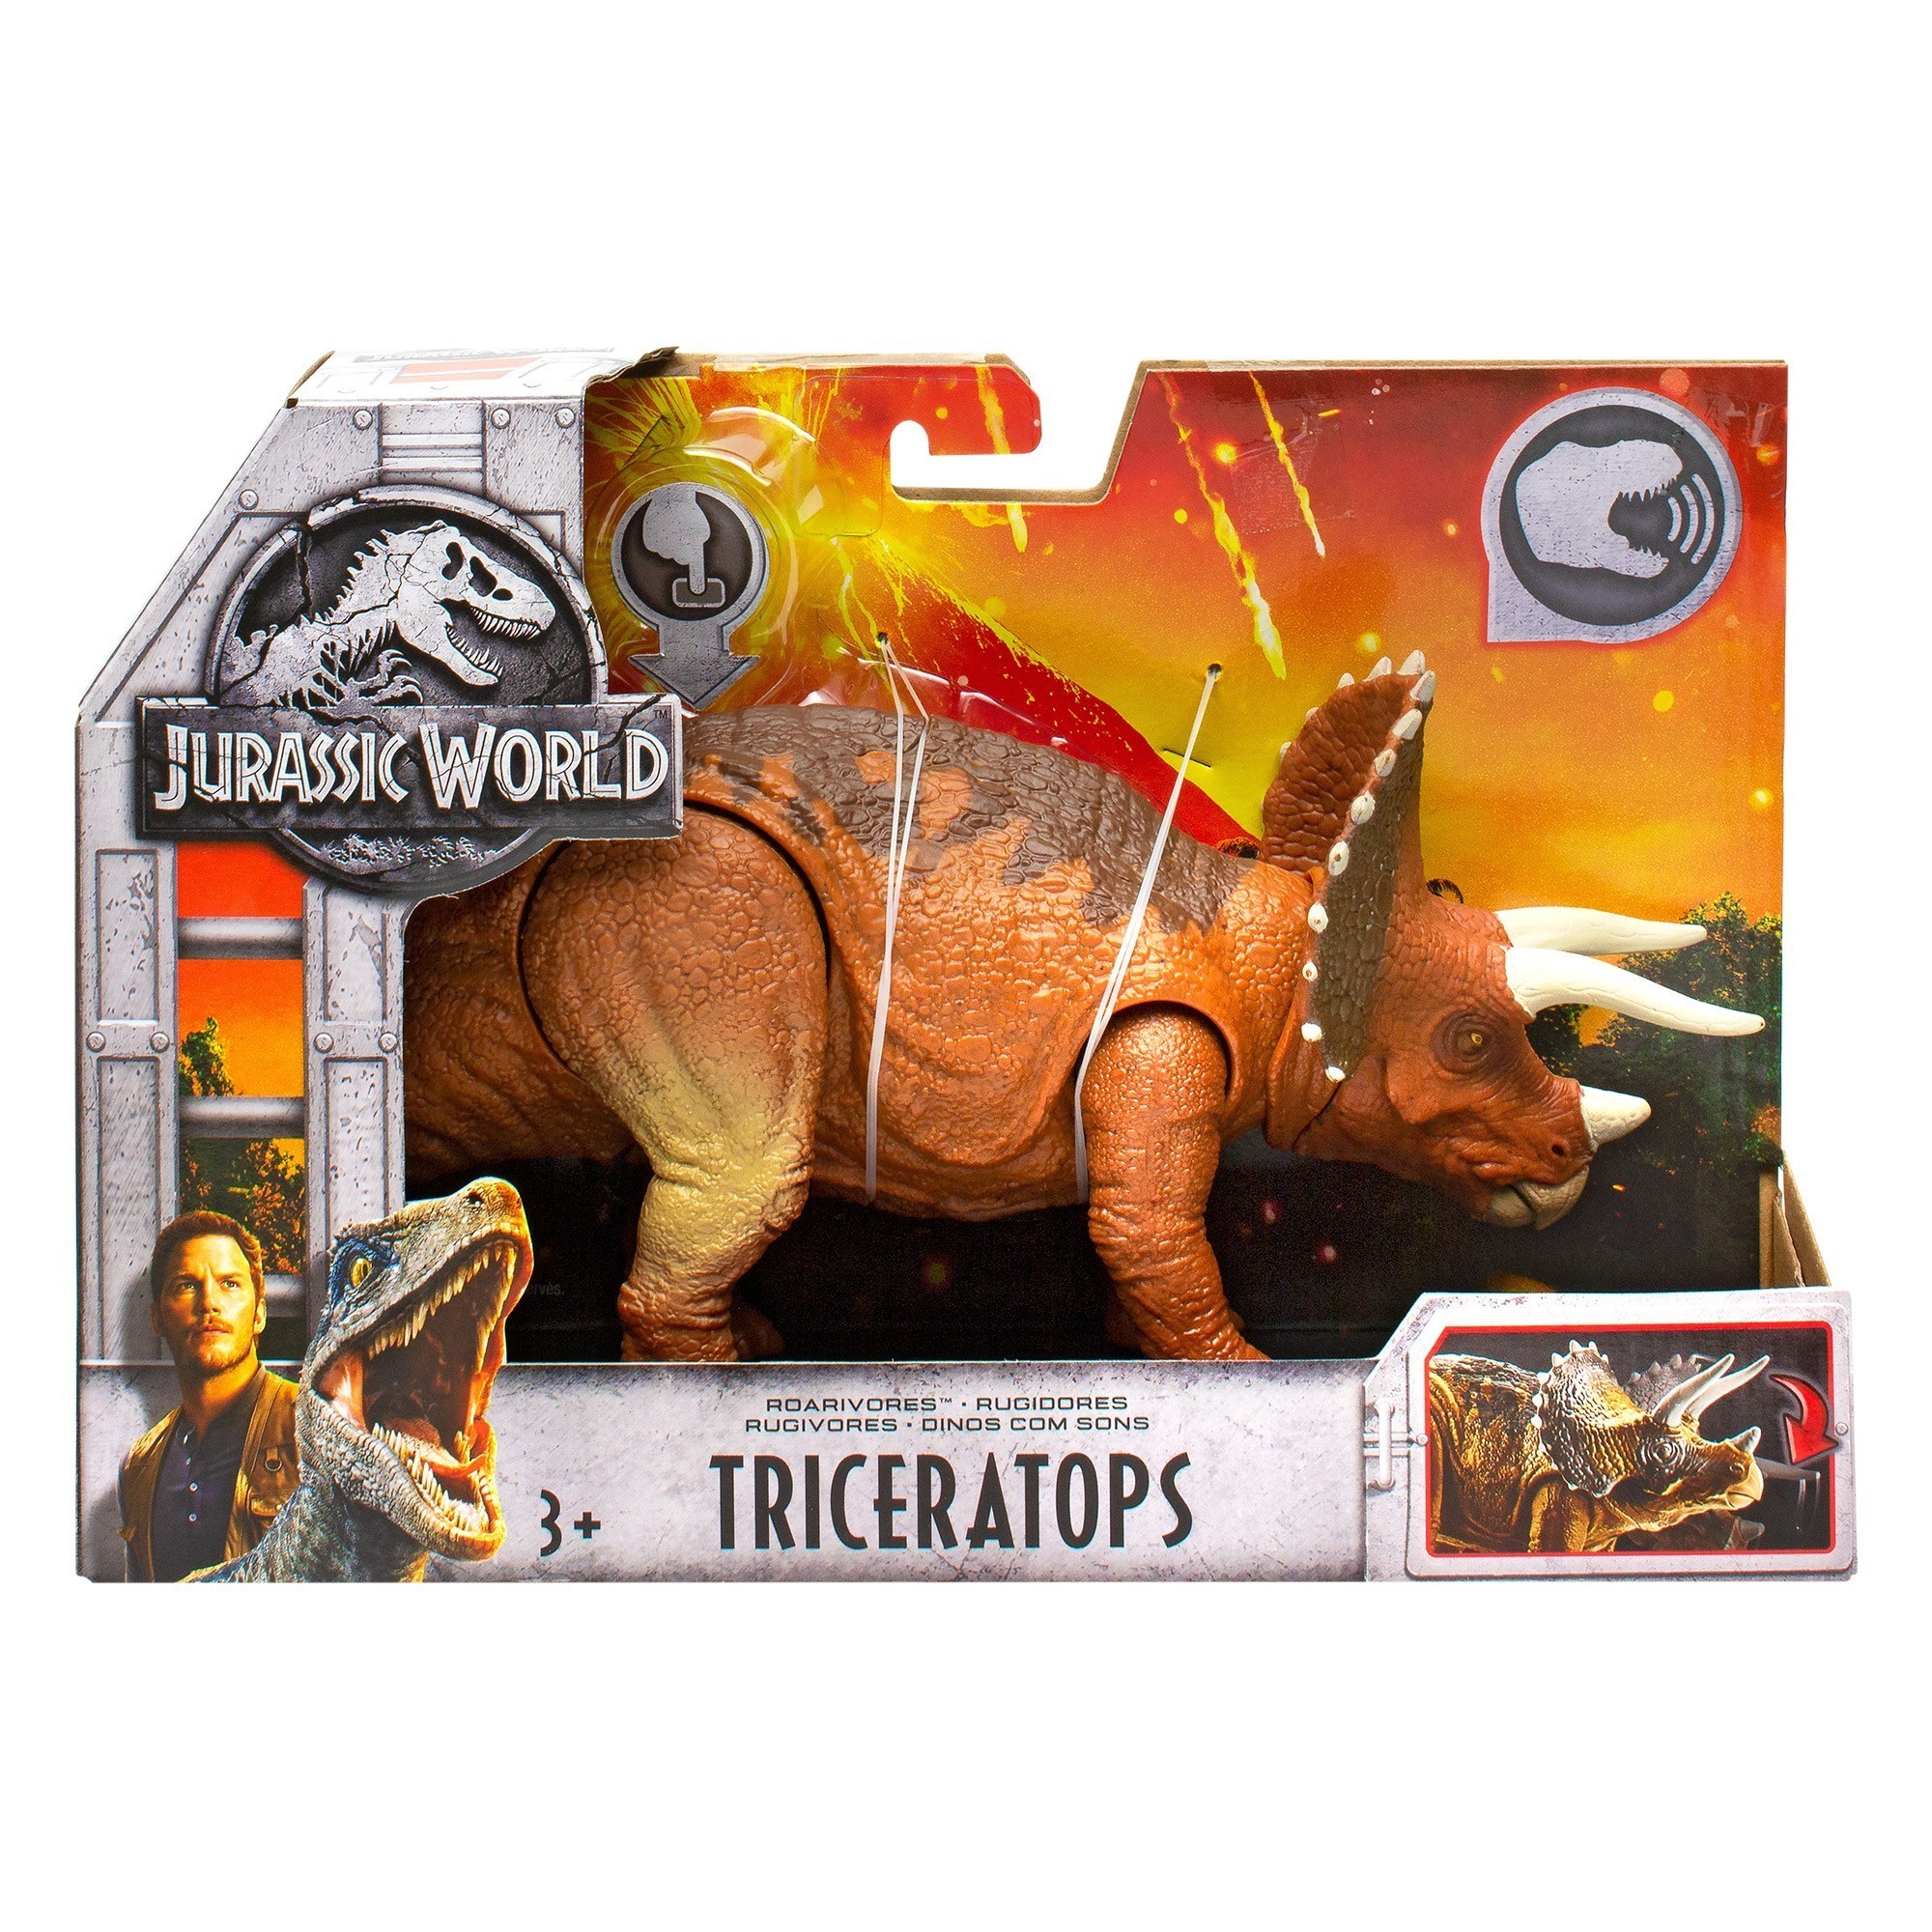 Jurassic World - Roarivores Dinosaurs - Triceratops